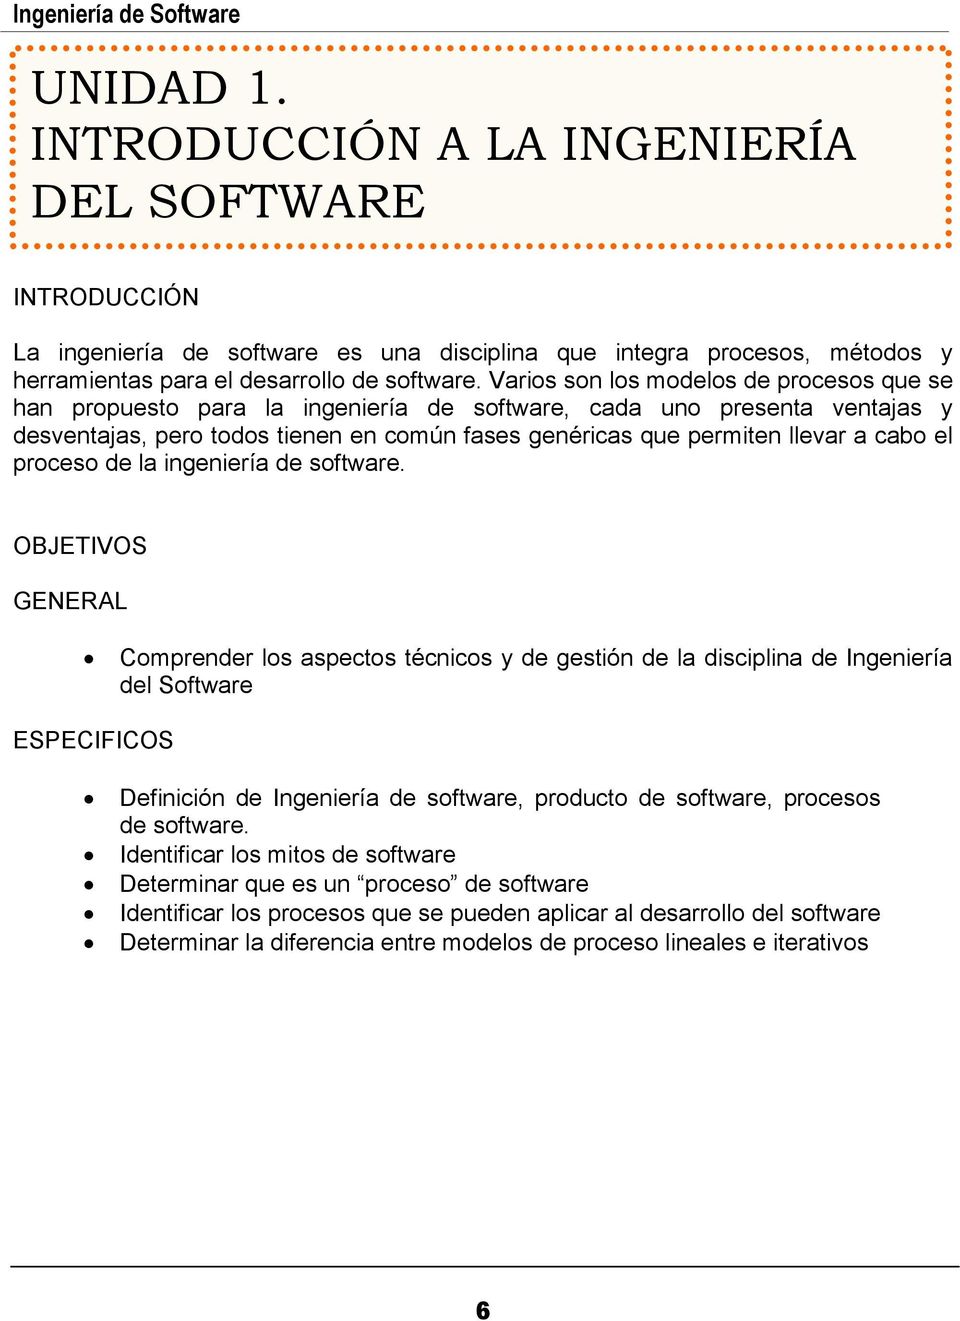 Ingenieria De Software Pdf Descargar Libre